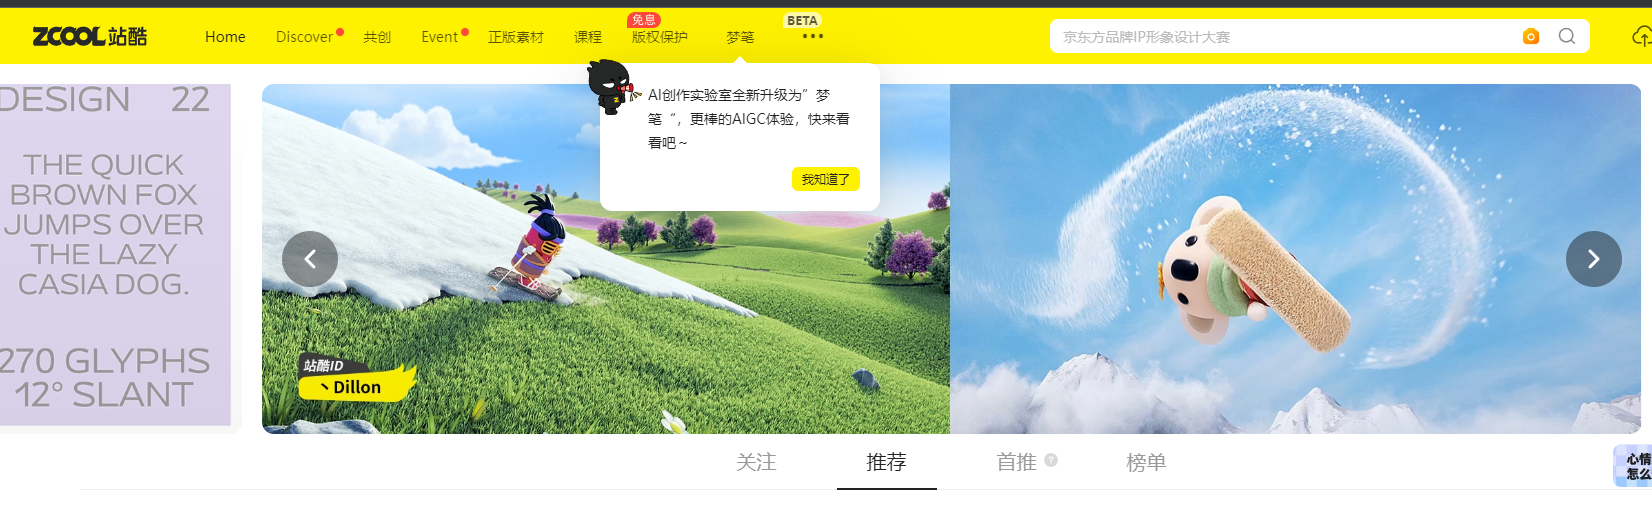 ZCool - китайская социальная сеть для творческих людей и любителей искусства